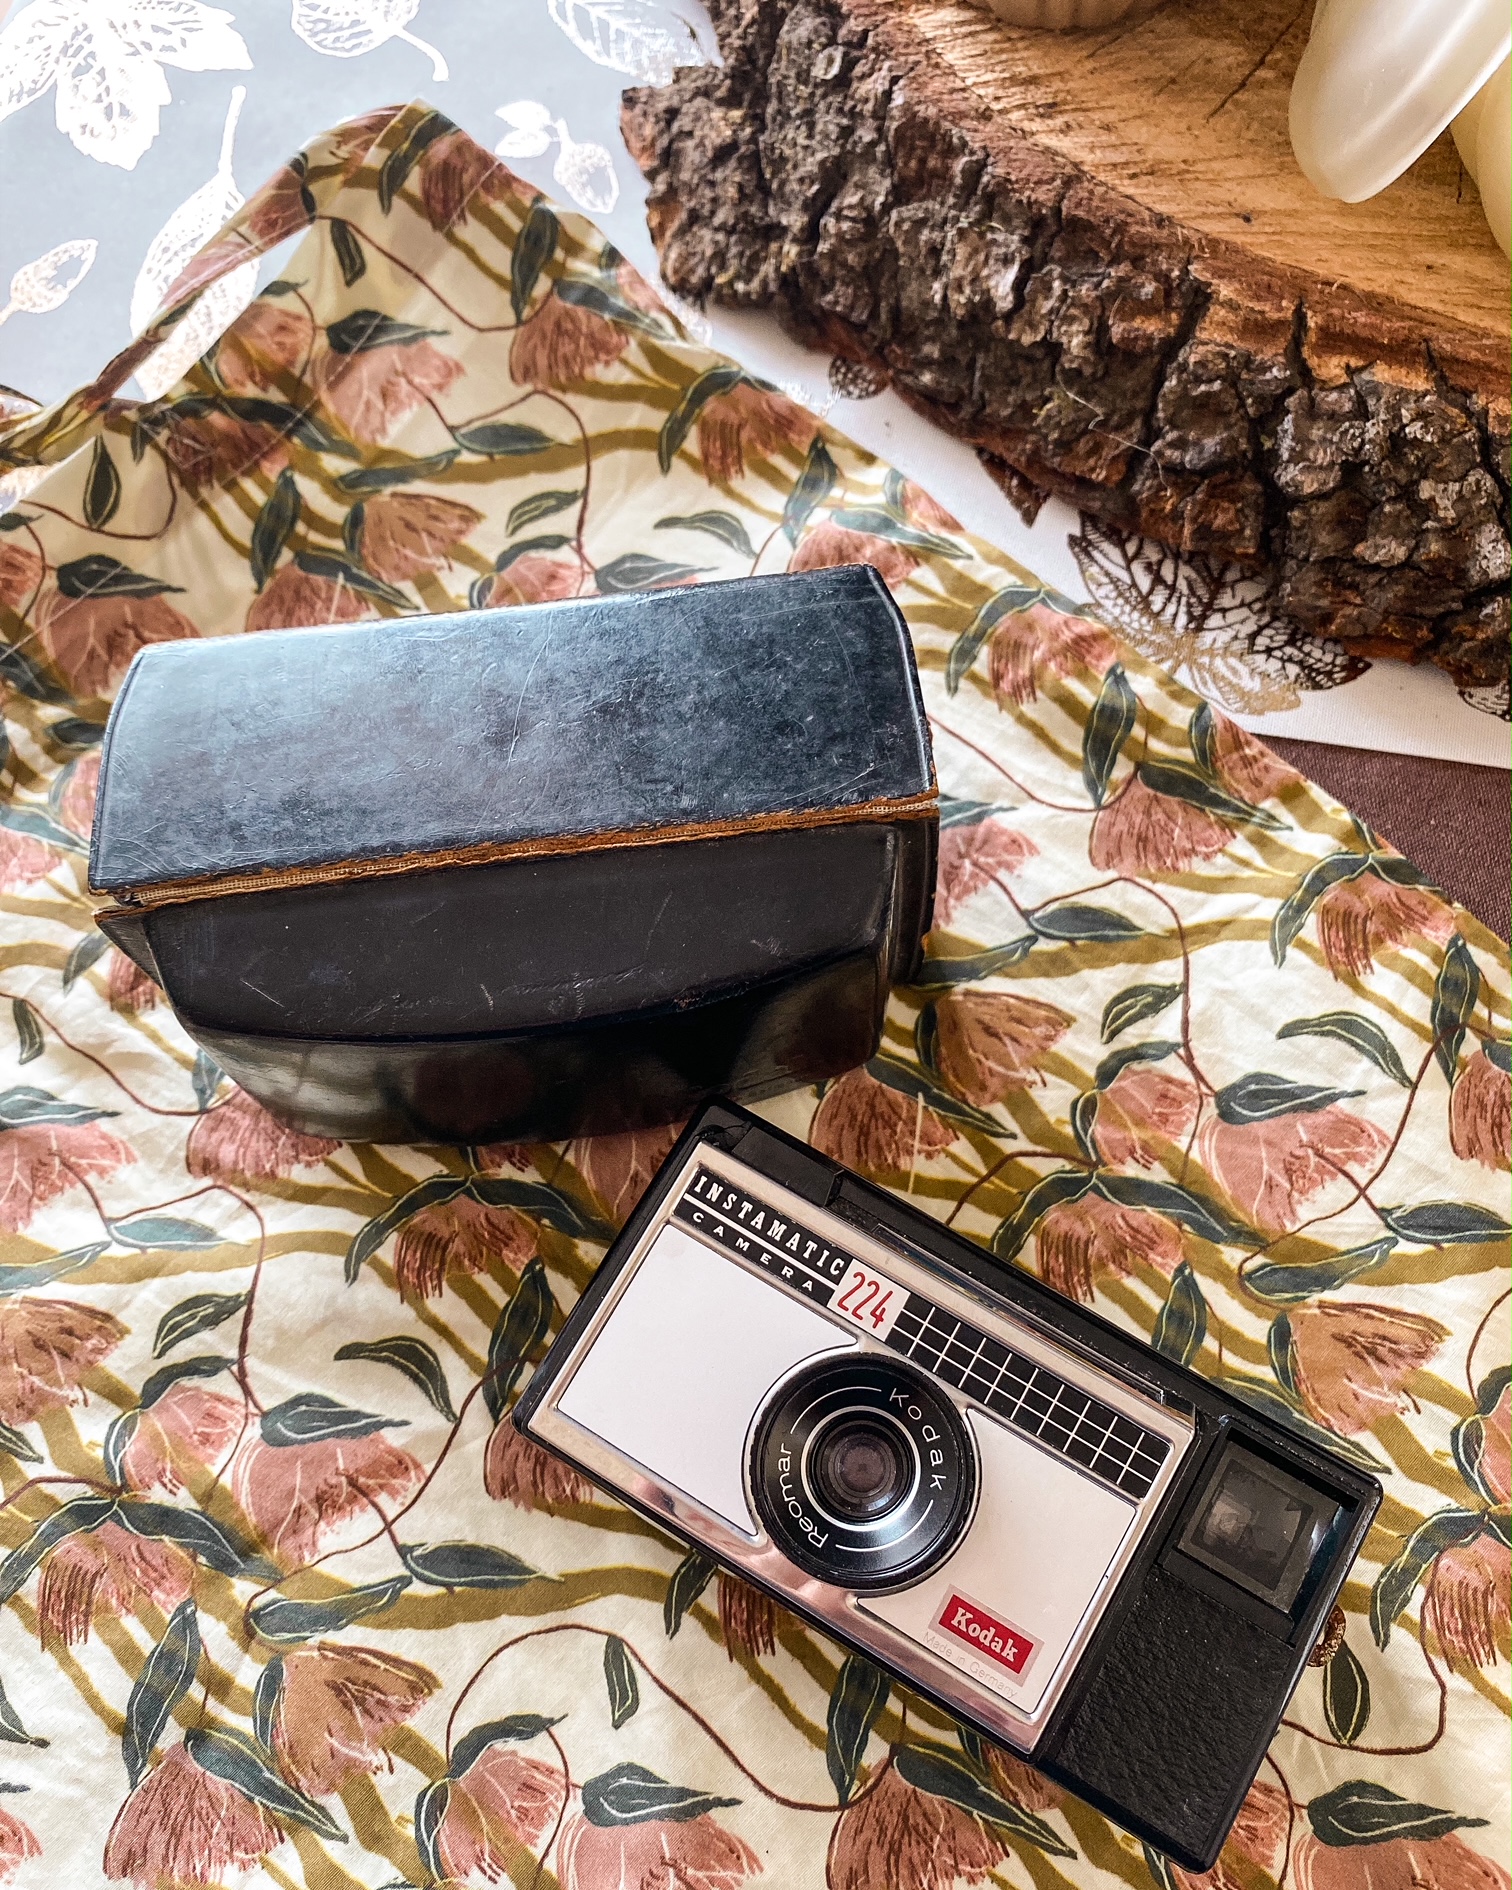 Un vieil appareil photo Kodak Instamatic à côté de son étui